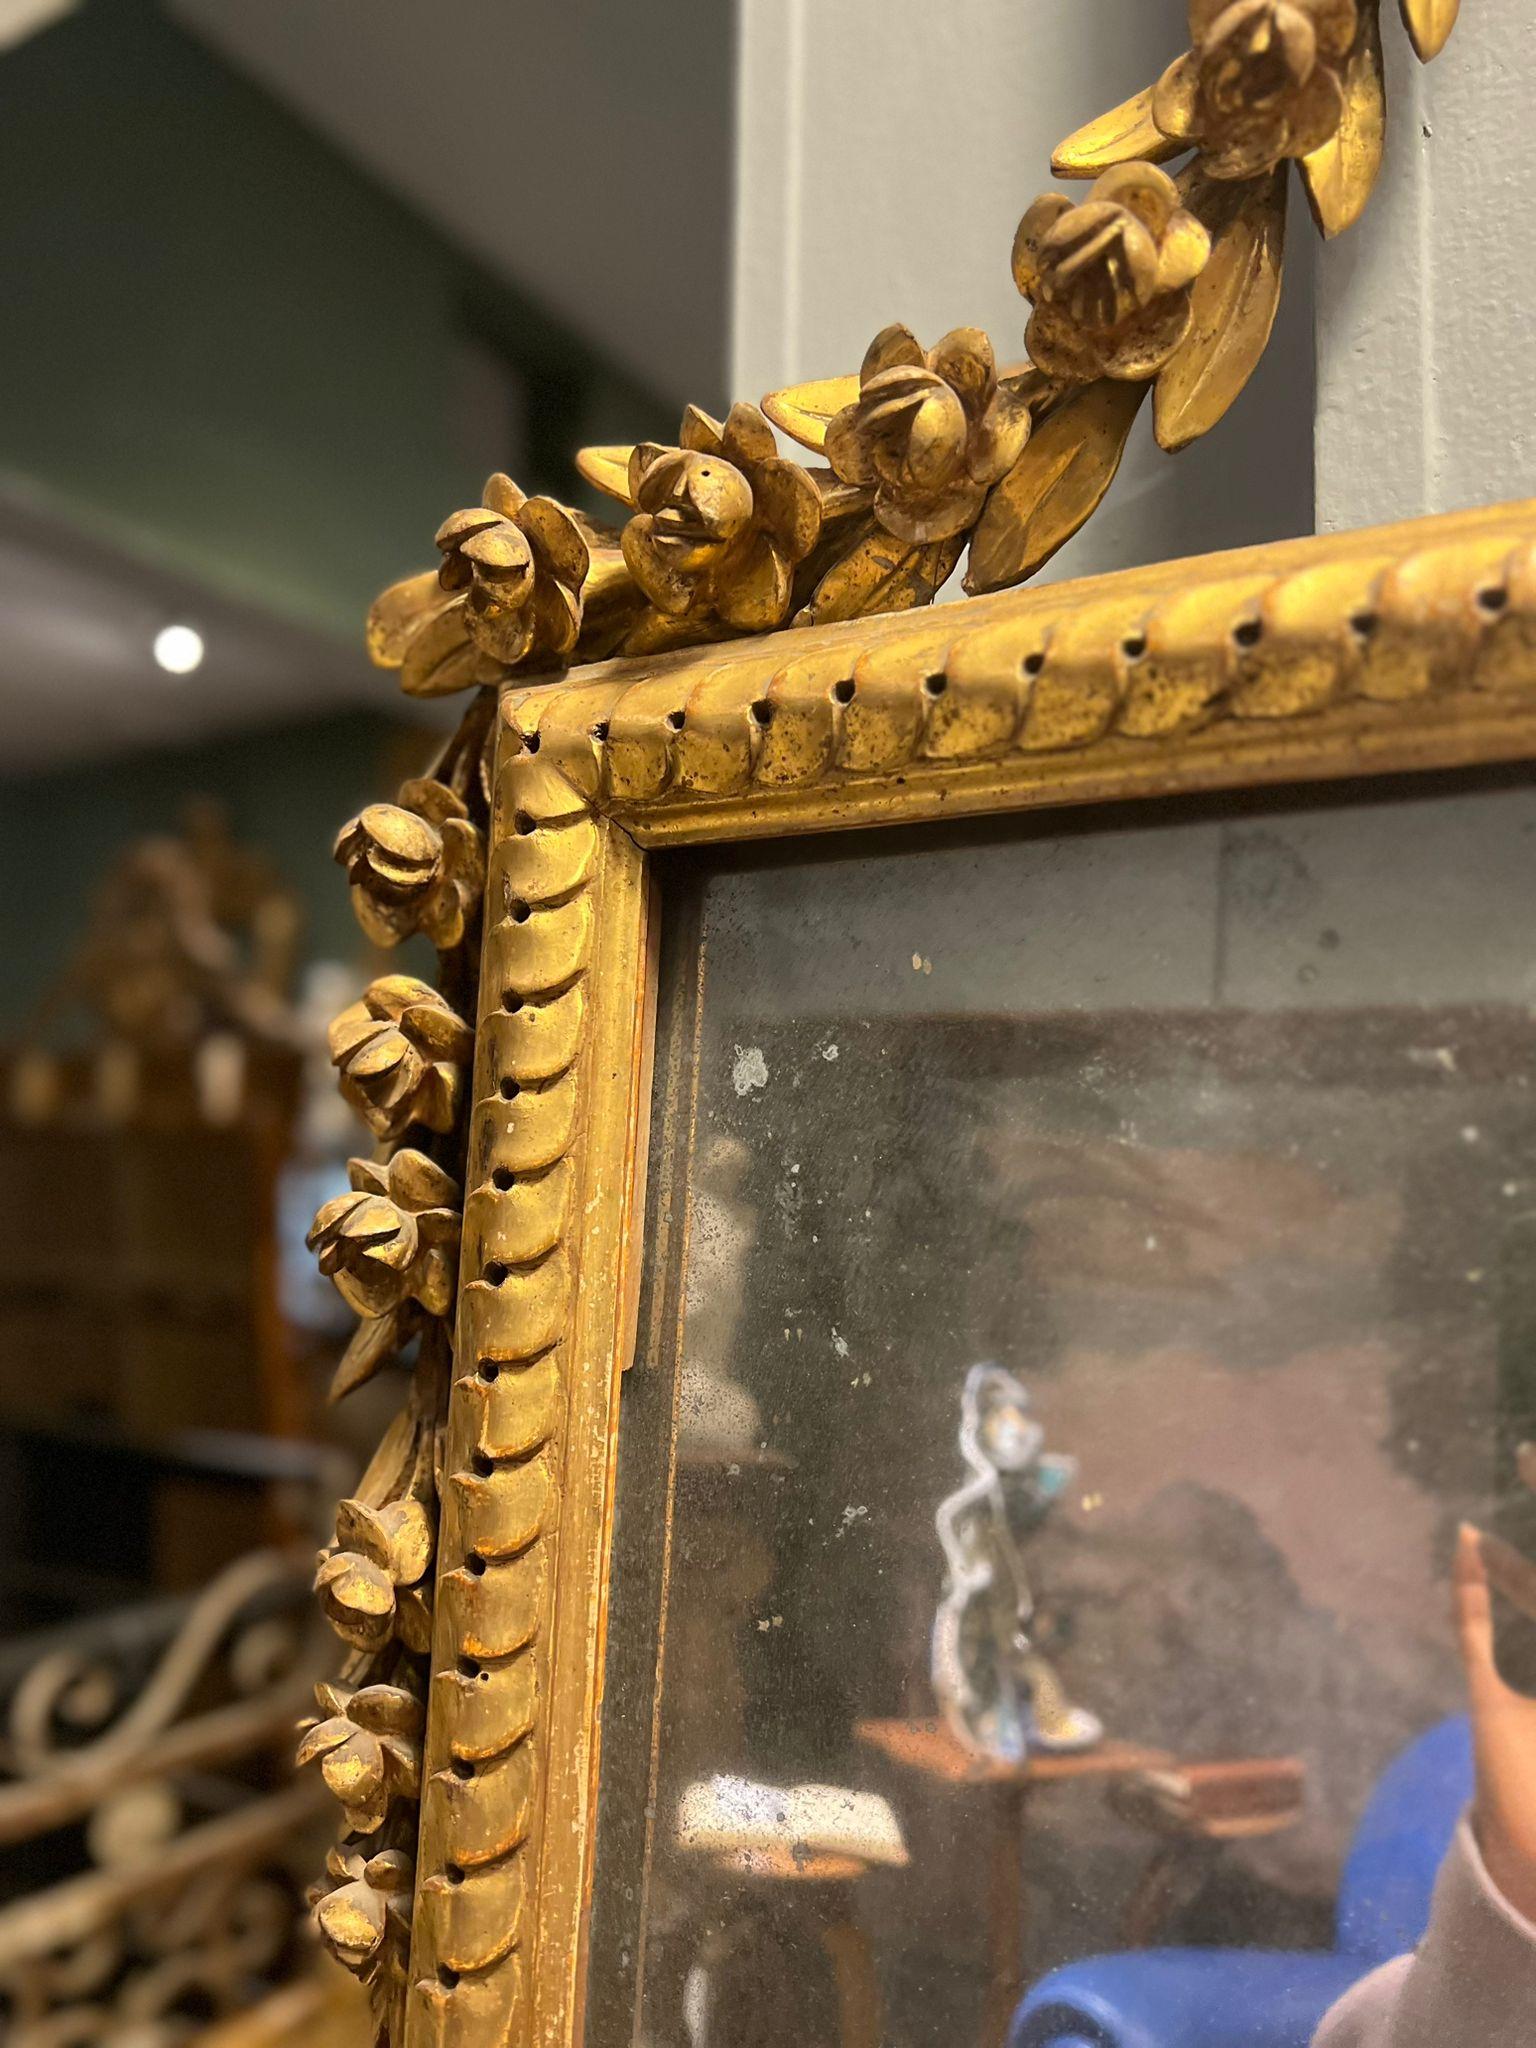 Magnifique miroir Louis XVI en bois sculpté et doré.

Extrêmement raffiné, le cymatium est richement sculpté en forme de vase à fleurs d'où partent latéralement des cordons. 

Les sculptures et les dorures sont d'une qualité exquise. Le miroir monté